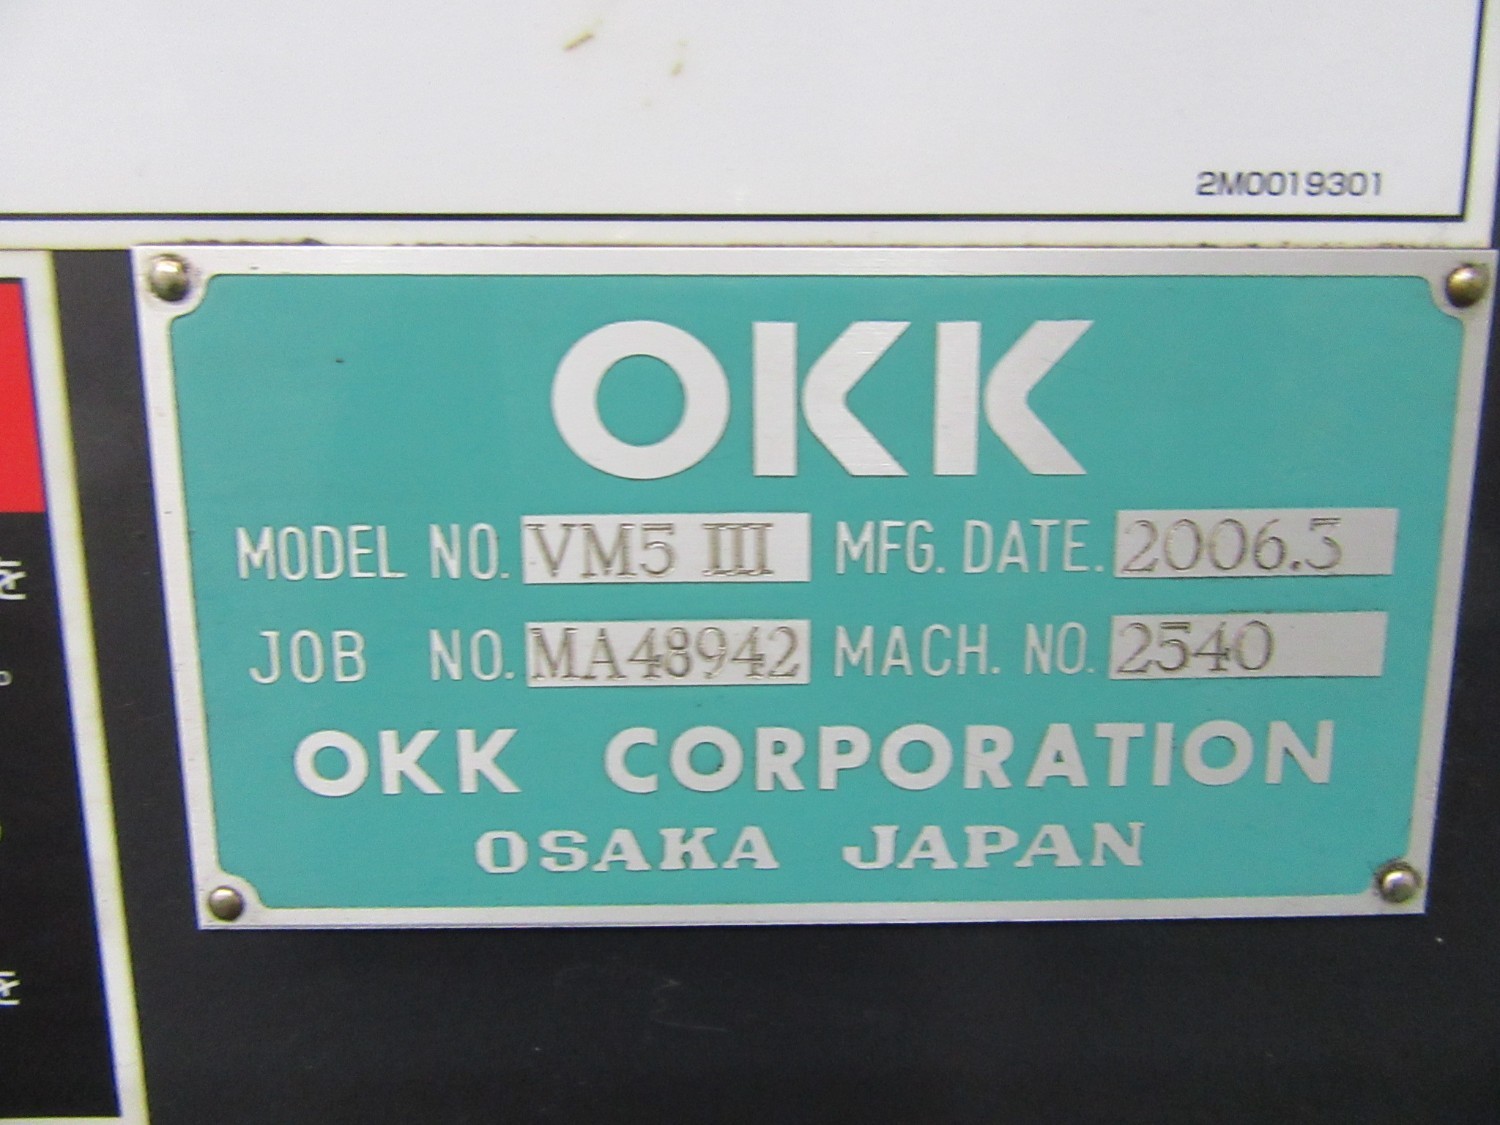 中古立マシニングセンタ VM5Ⅲ OKK